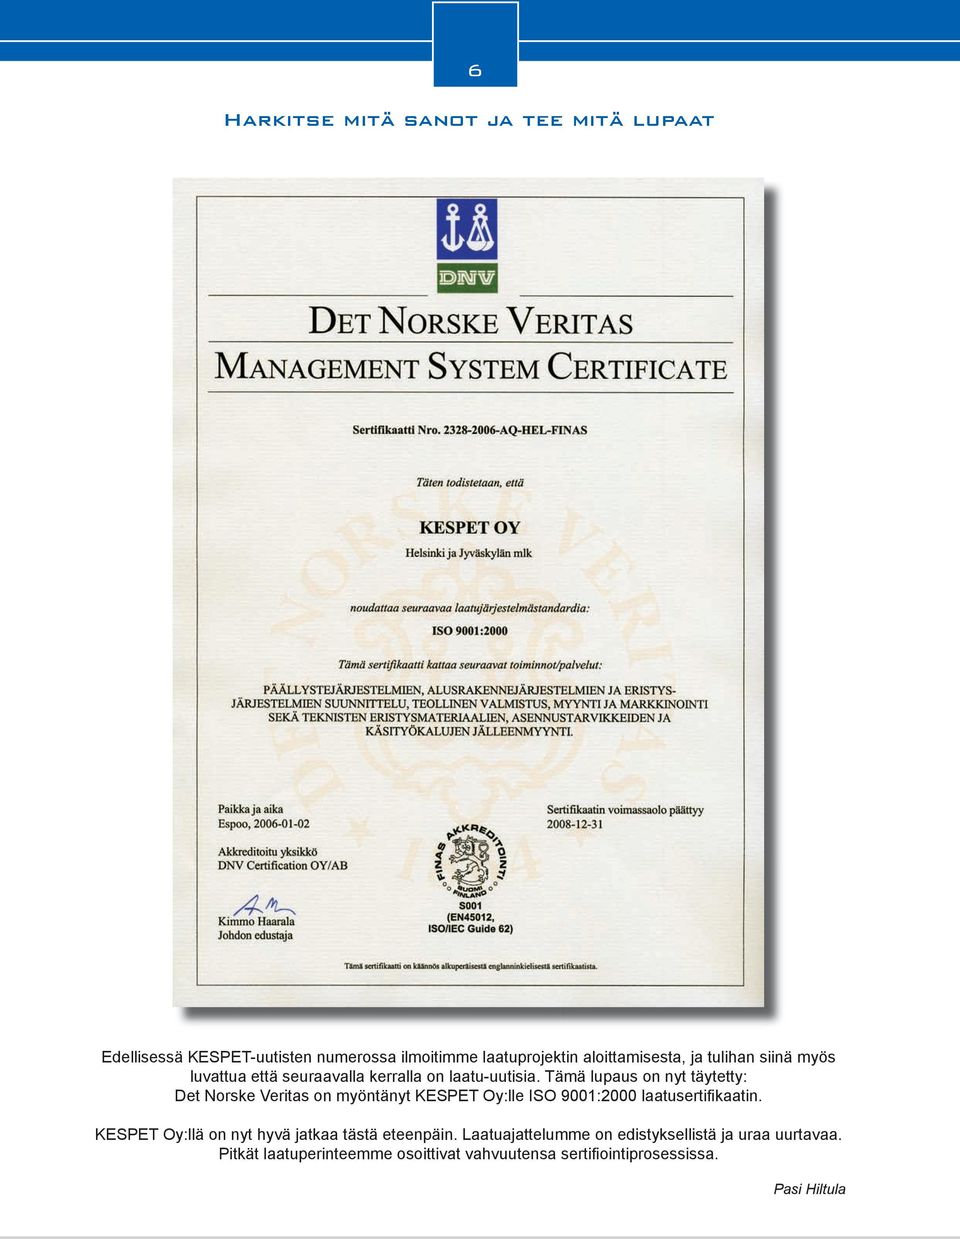 Tämä lupaus on nyt täytetty: Det Norske Veritas on myöntänyt KESPET Oy:lle ISO 9001:2000 laatusertifi kaatin.